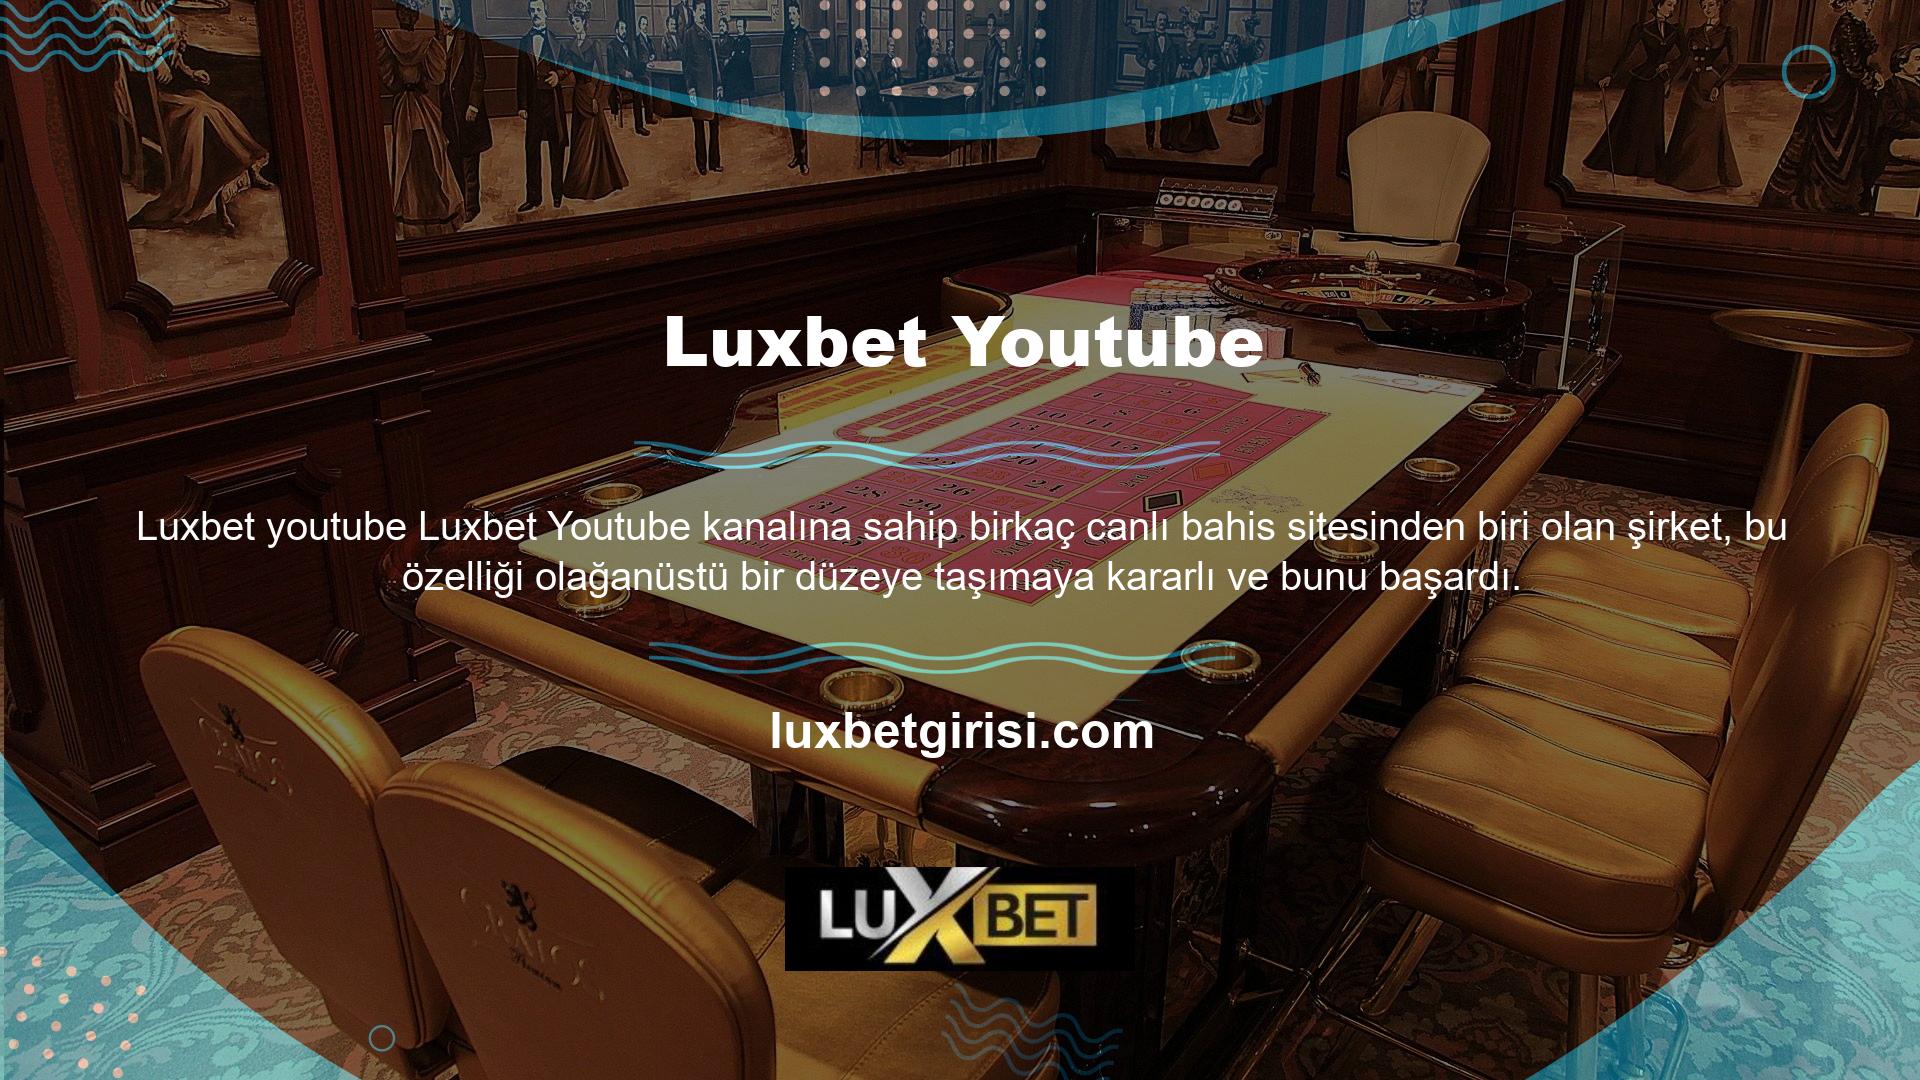 Luxbet, agresif çalışması nedeniyle sahanın önde gelen oyuncularından biri haline geldi